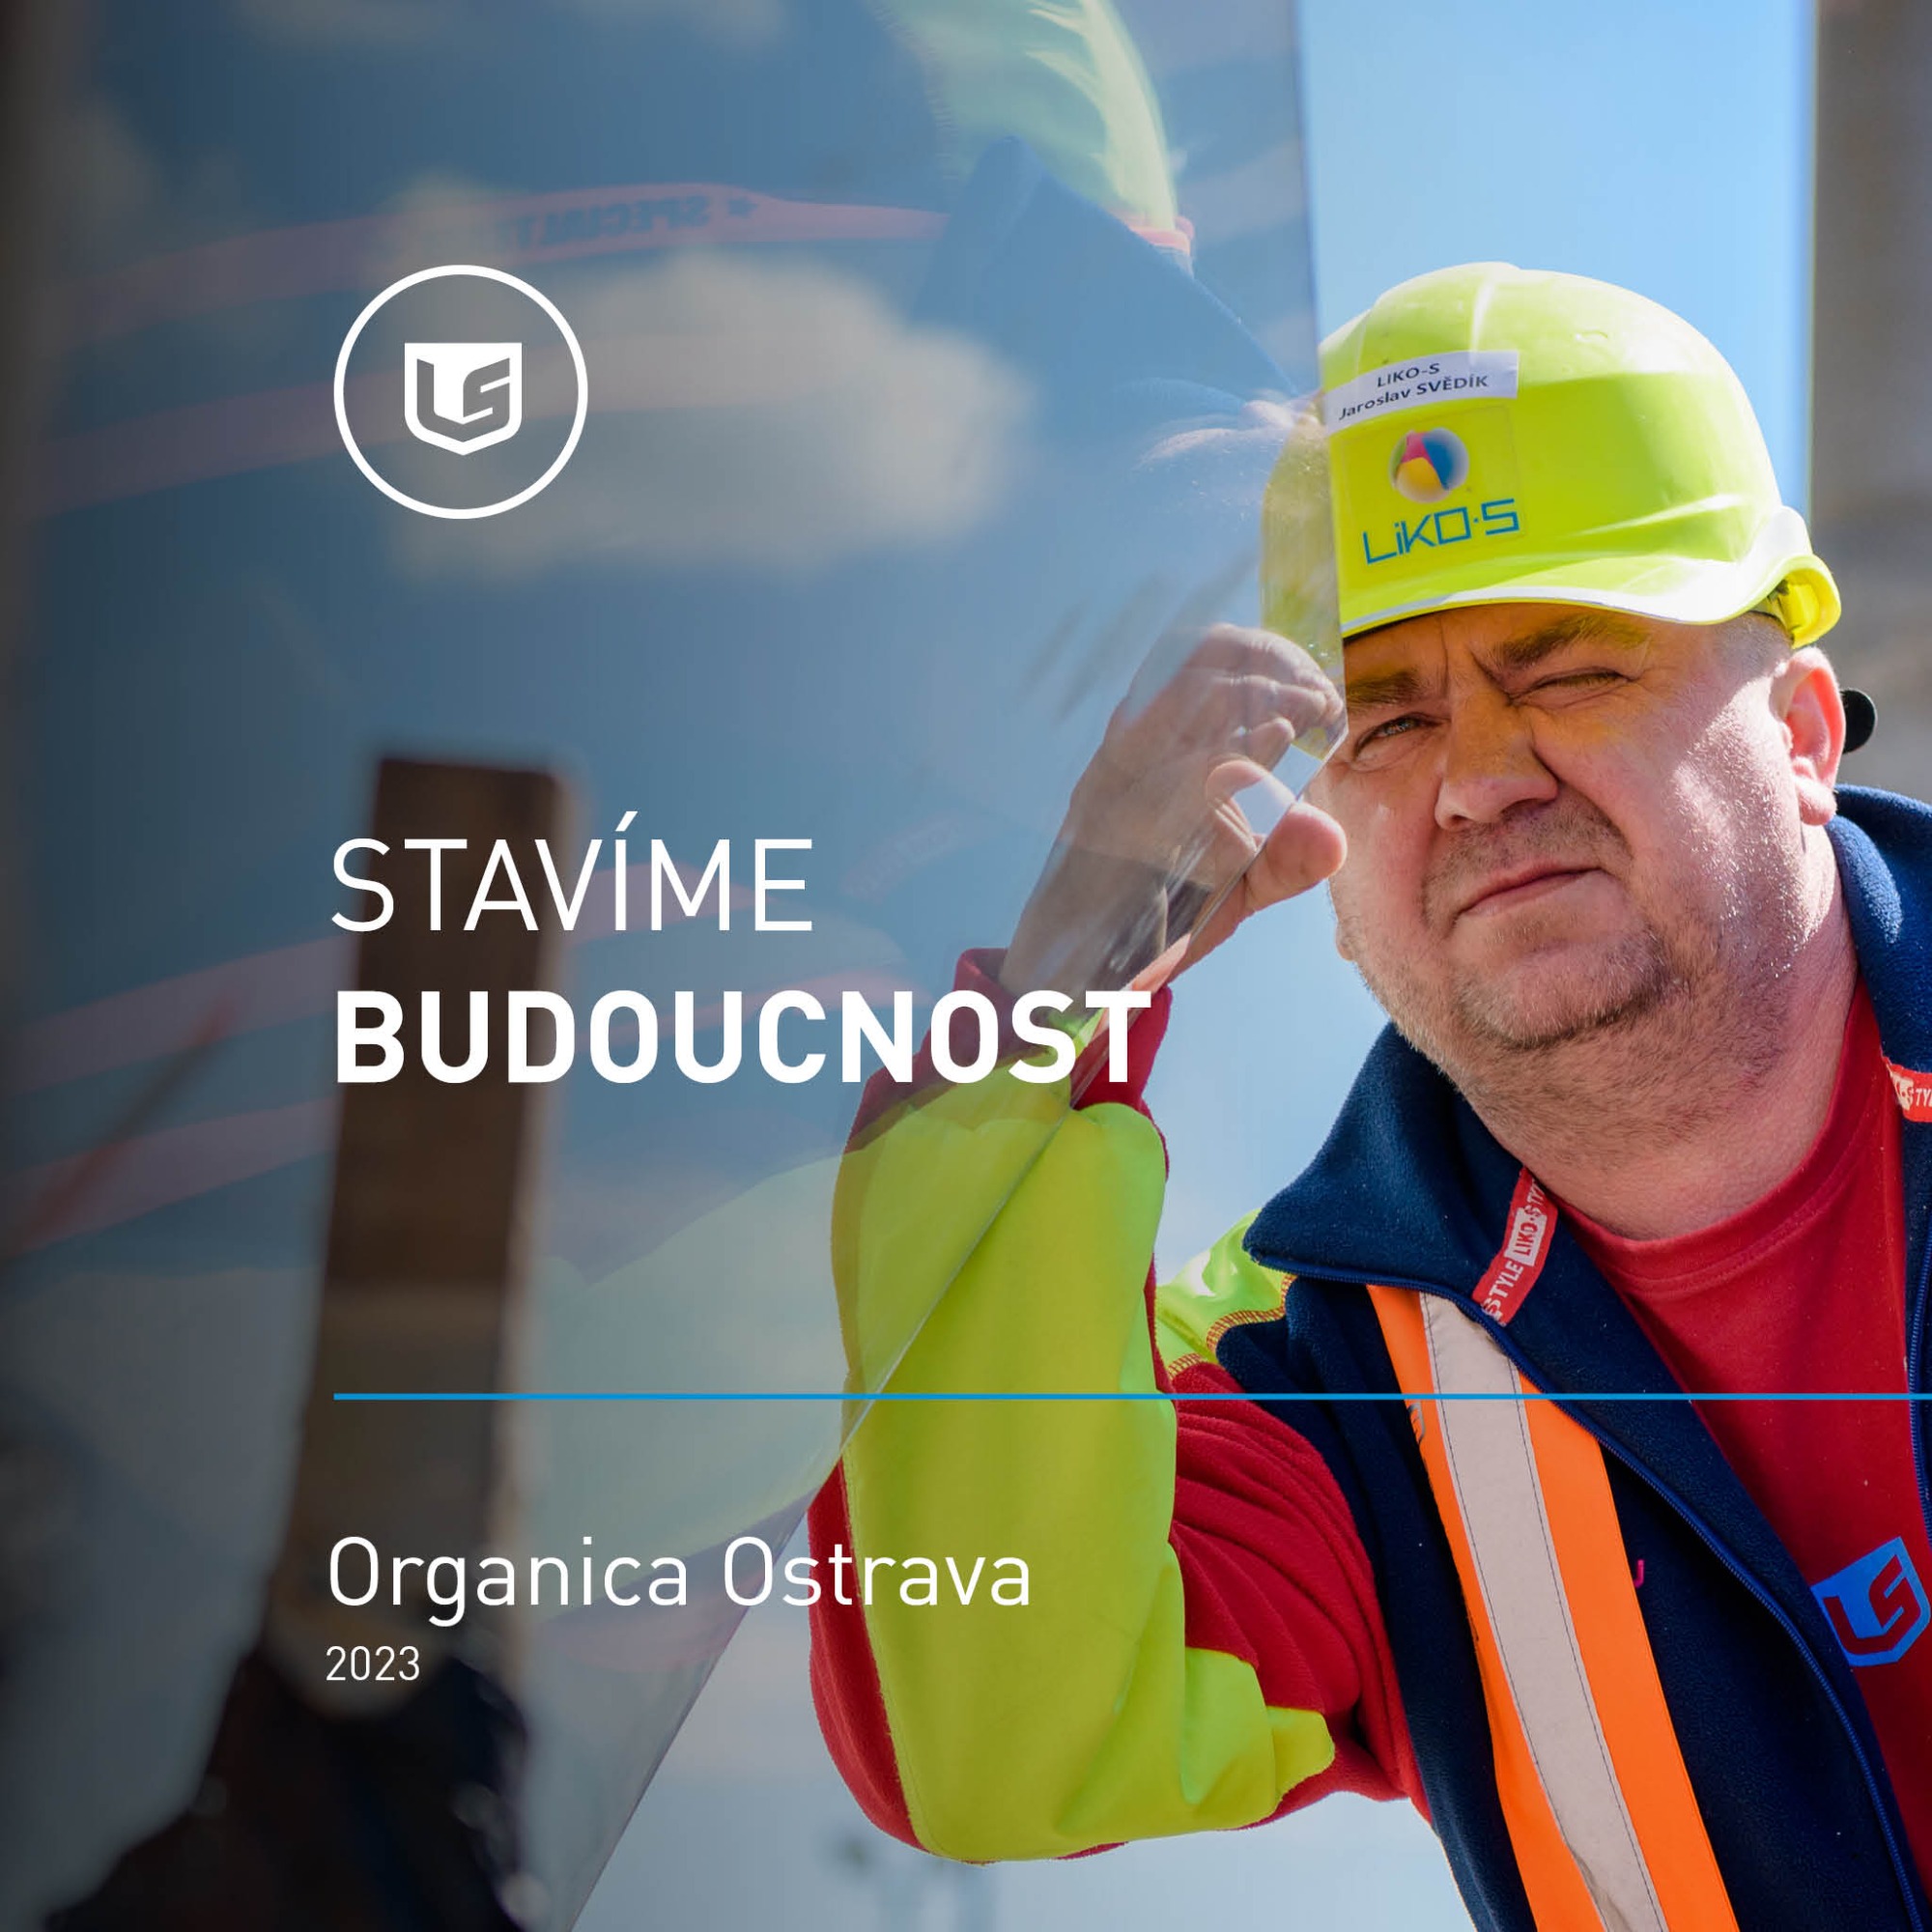 Building the Future of Ostrava